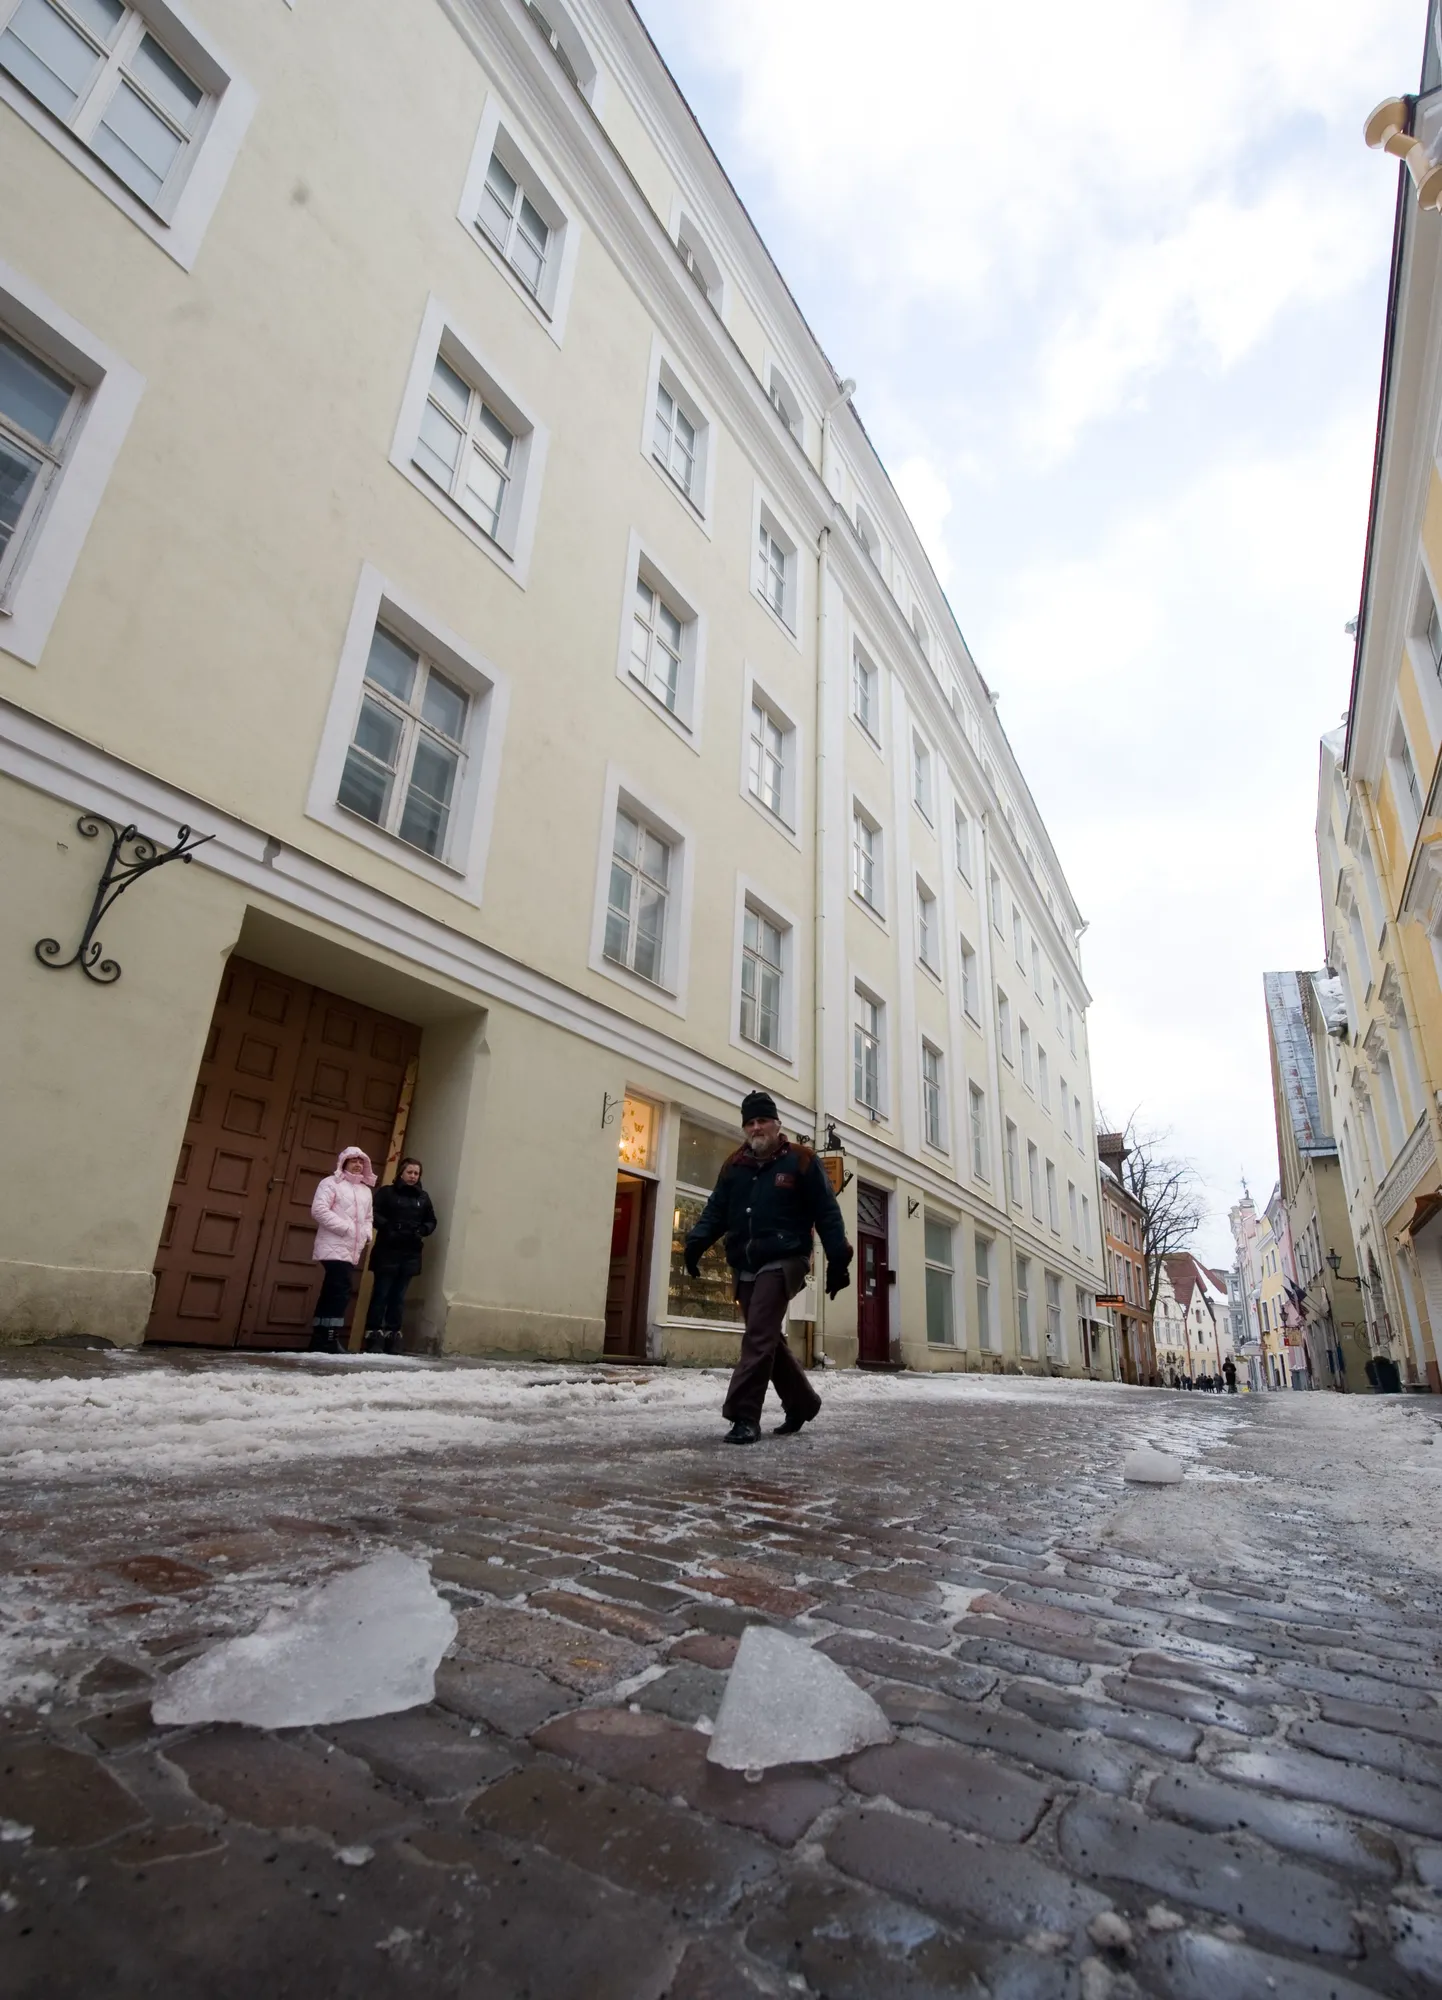 Дом по адресу Пикк, 36 в Таллинне. Здесь турист из Петербурга получил оказавшиеся смертельными травмы.